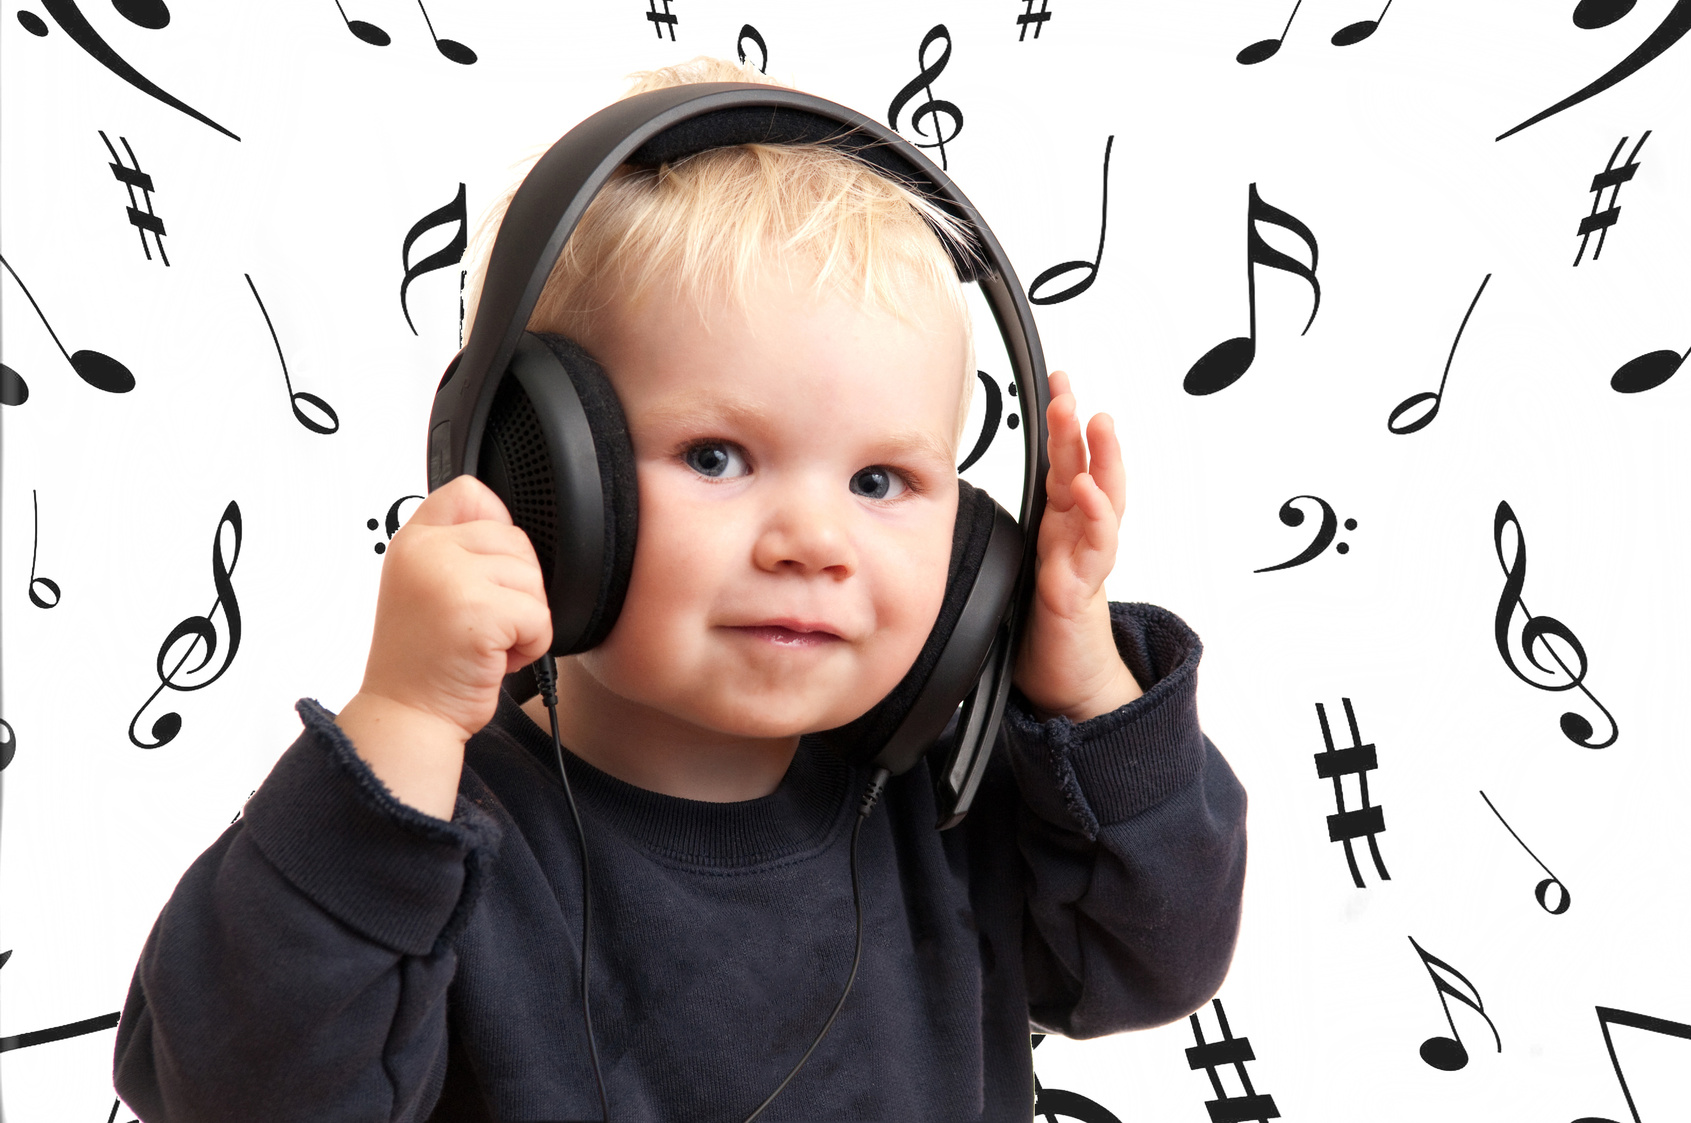 Беседа слушание музыки. Ребенок в наушниках. Ребенок с наушниками. Слушание музыки. Музыкальное восприятие детей.